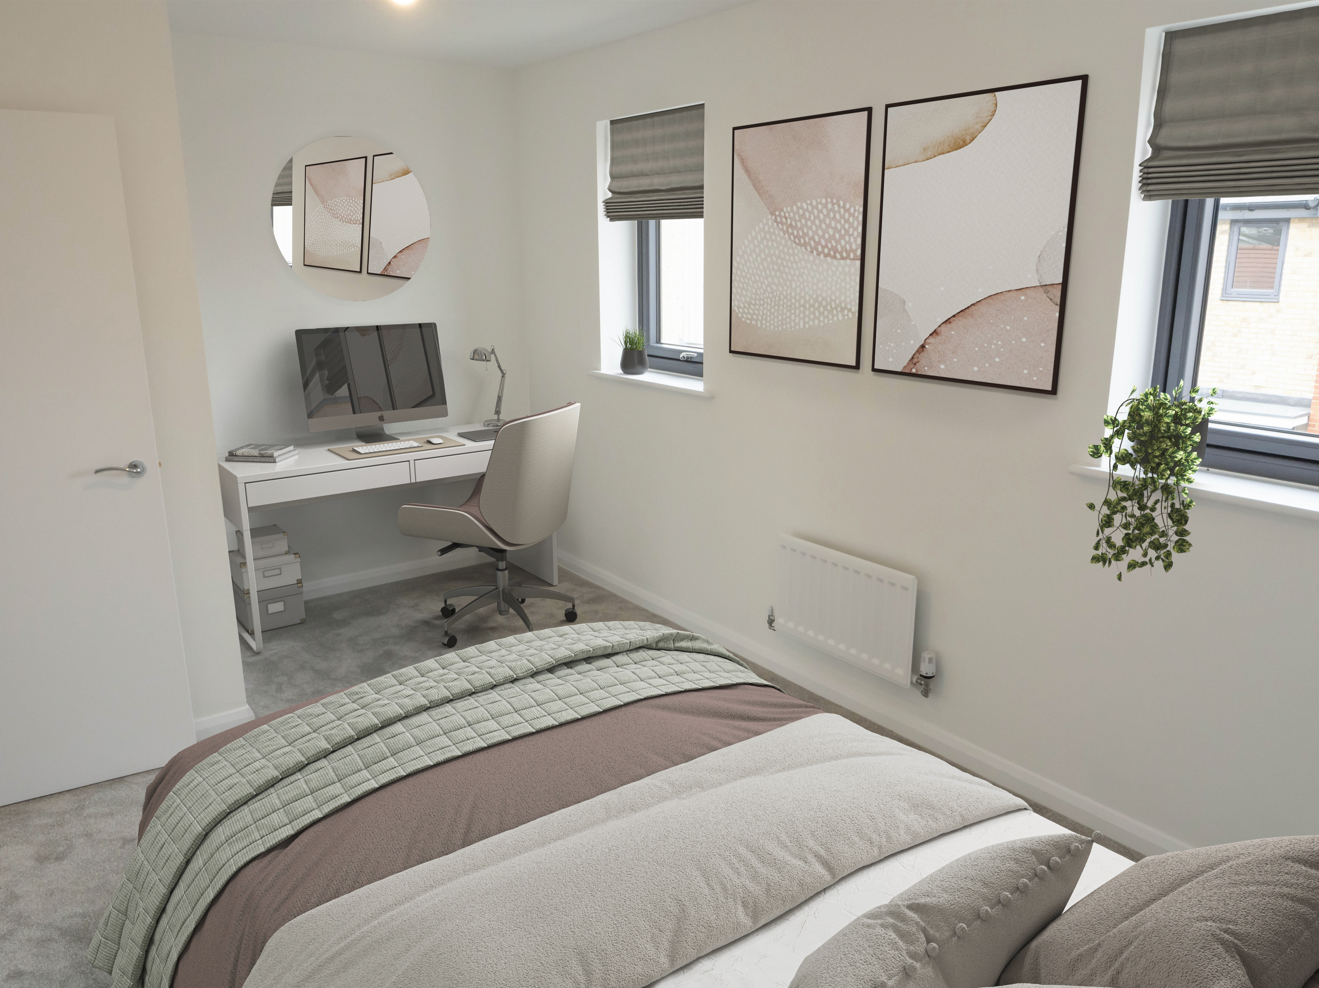 Image of bedroom 2 in Plot 3 Carter Meadows